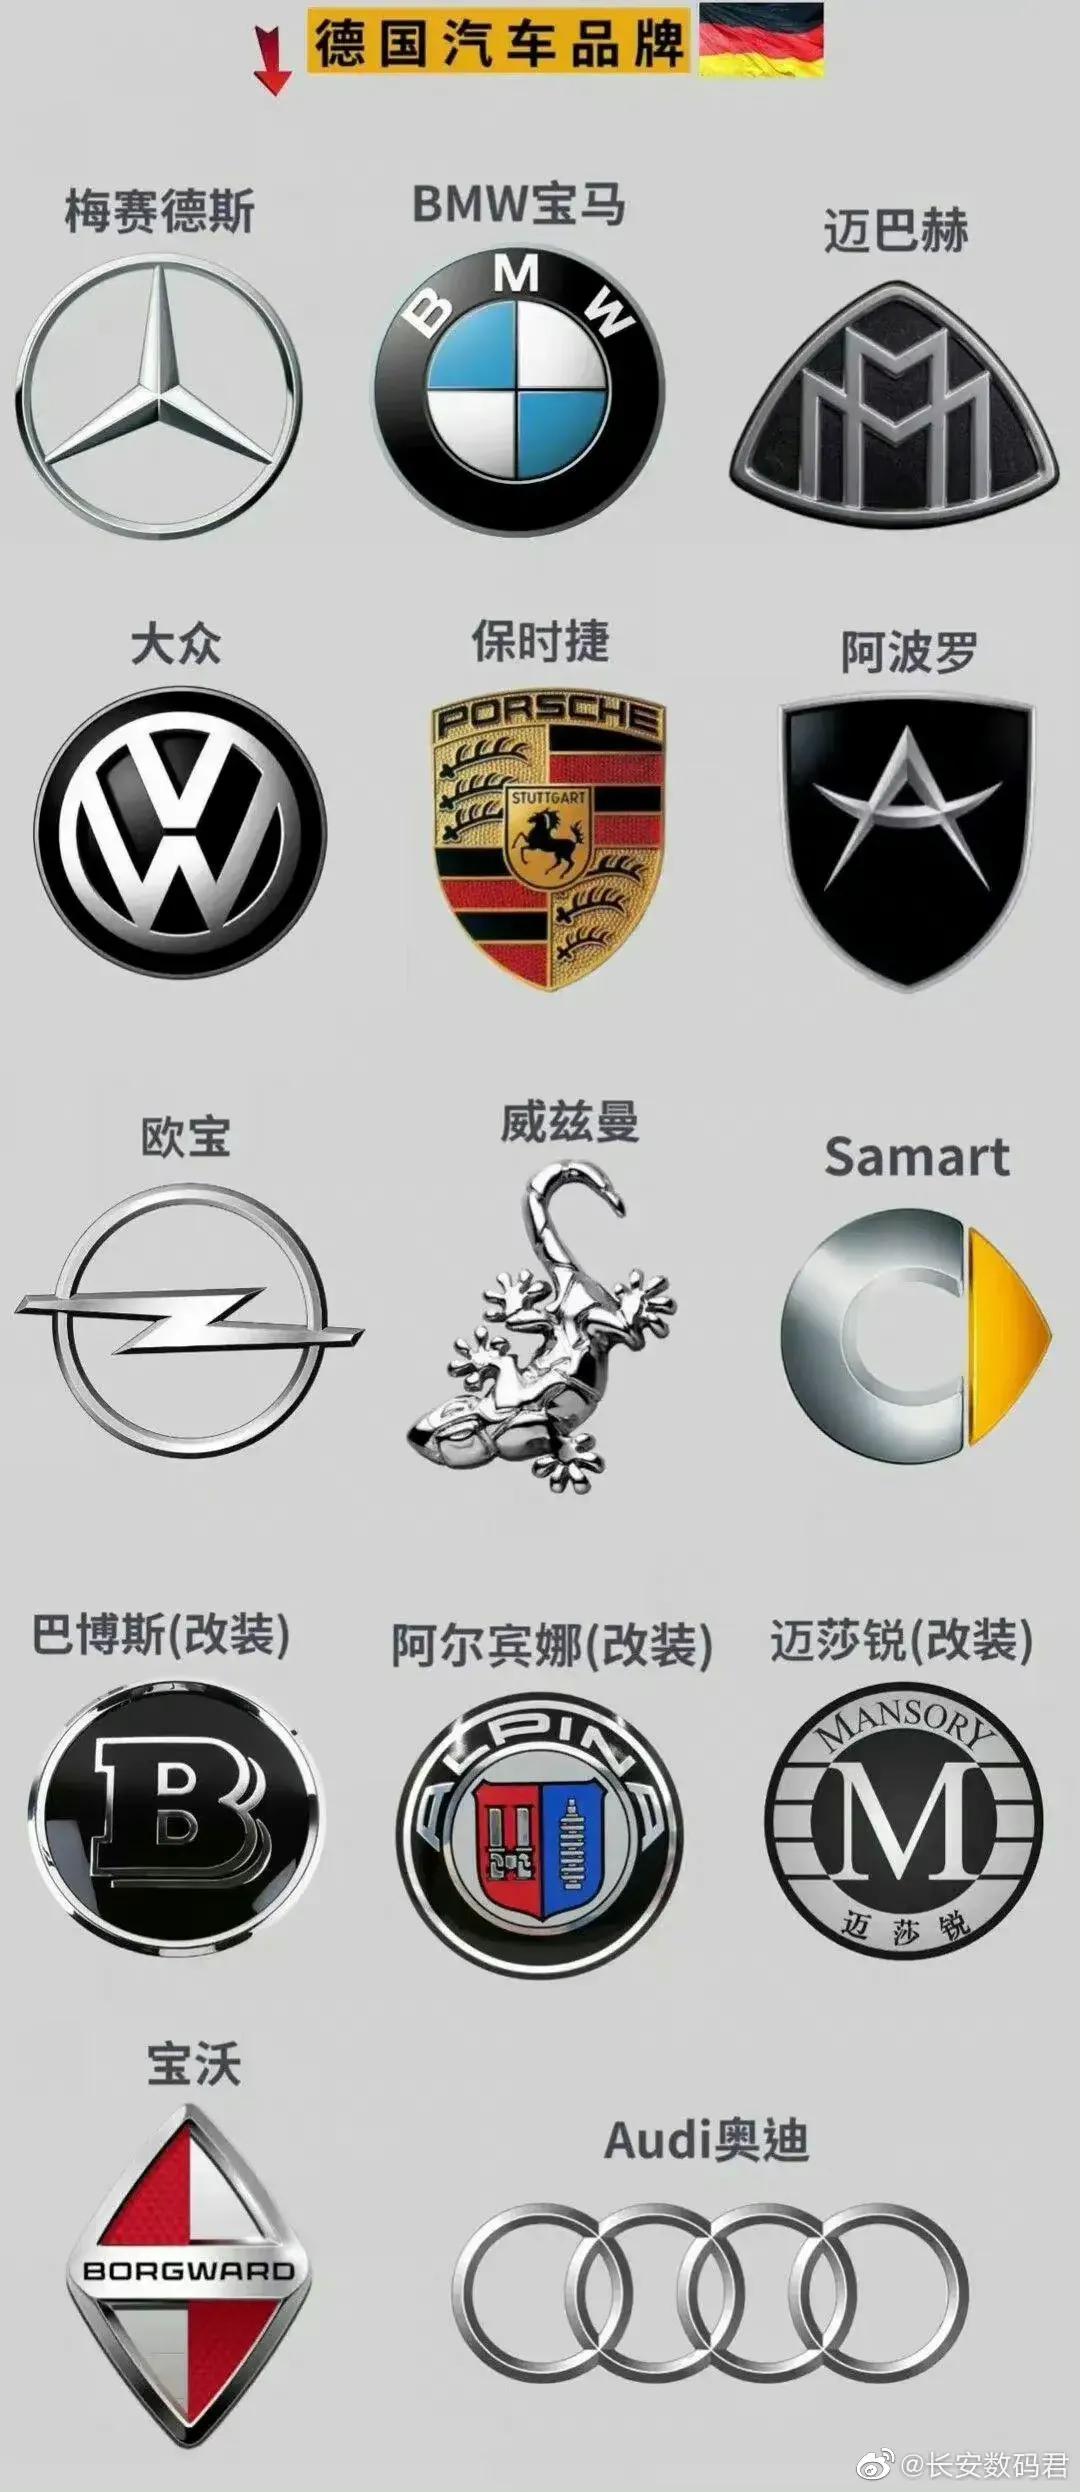 华系品牌车标和德系品牌车标你们更喜欢哪一个汽车